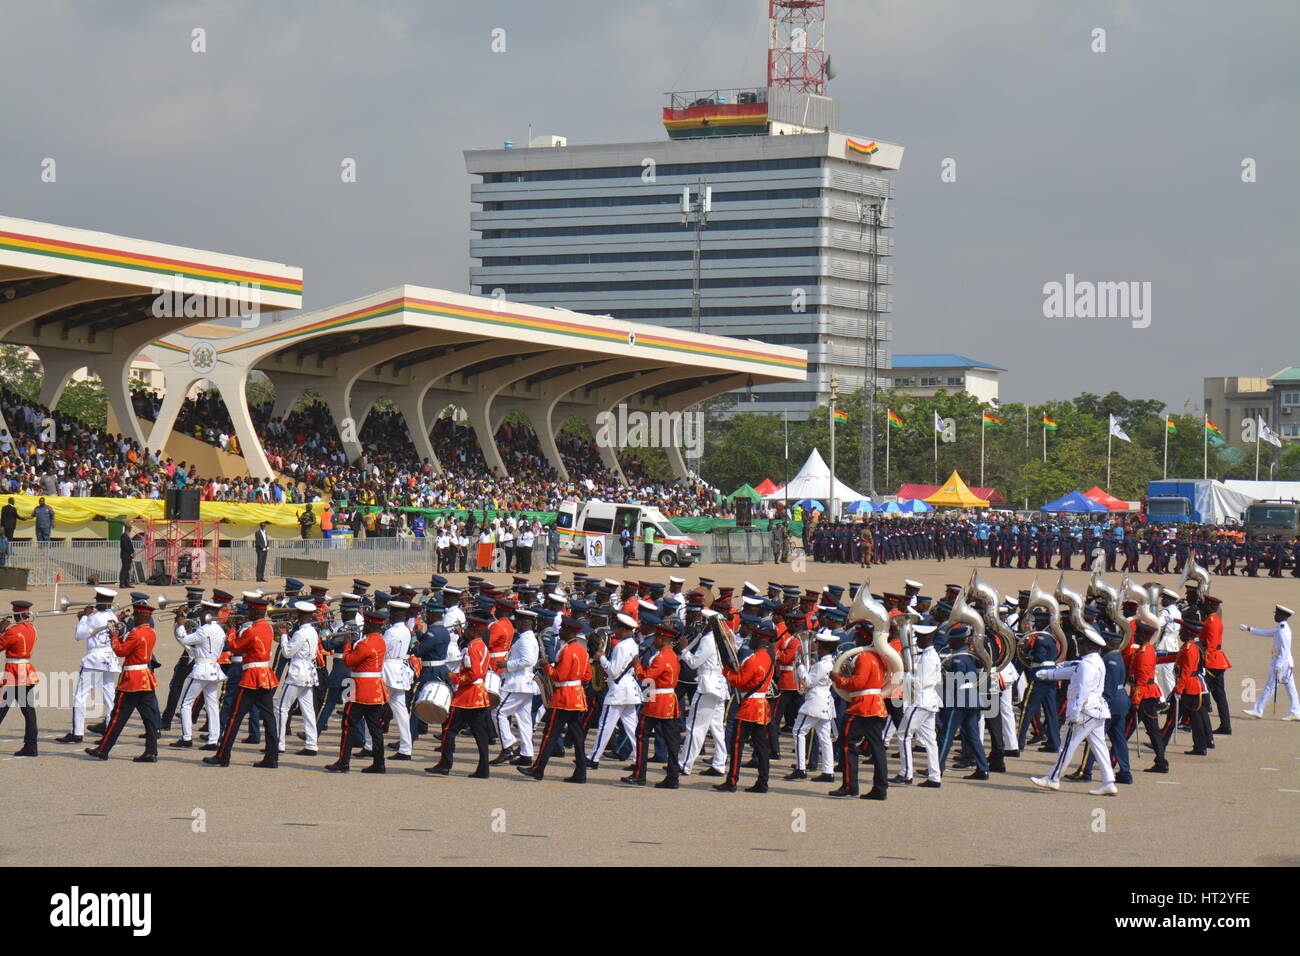 6. März 2017 - Ghanas 60 Unabhängigkeit feiern... Ghana gewann 1957 als erstes afrikanisches Land es ist Freiheit. Einst eine britische Kolonie Goldküste genannt. Stockfoto